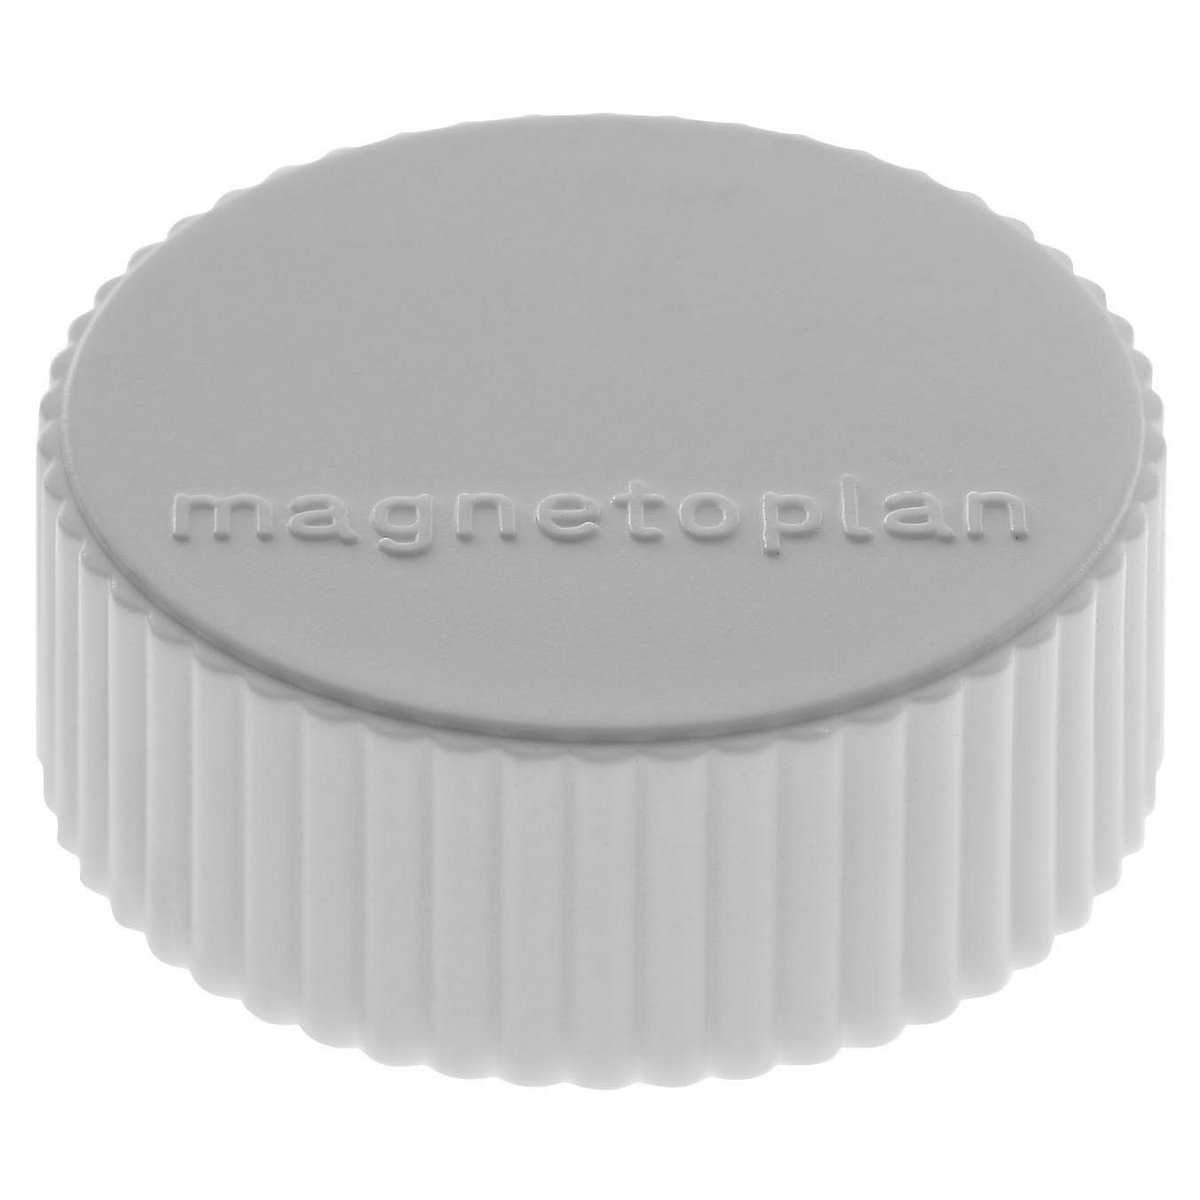 Plot magnétique DISCOFIX MAGNUM – magnetoplan, Ø 34 mm, lot de 50, gris